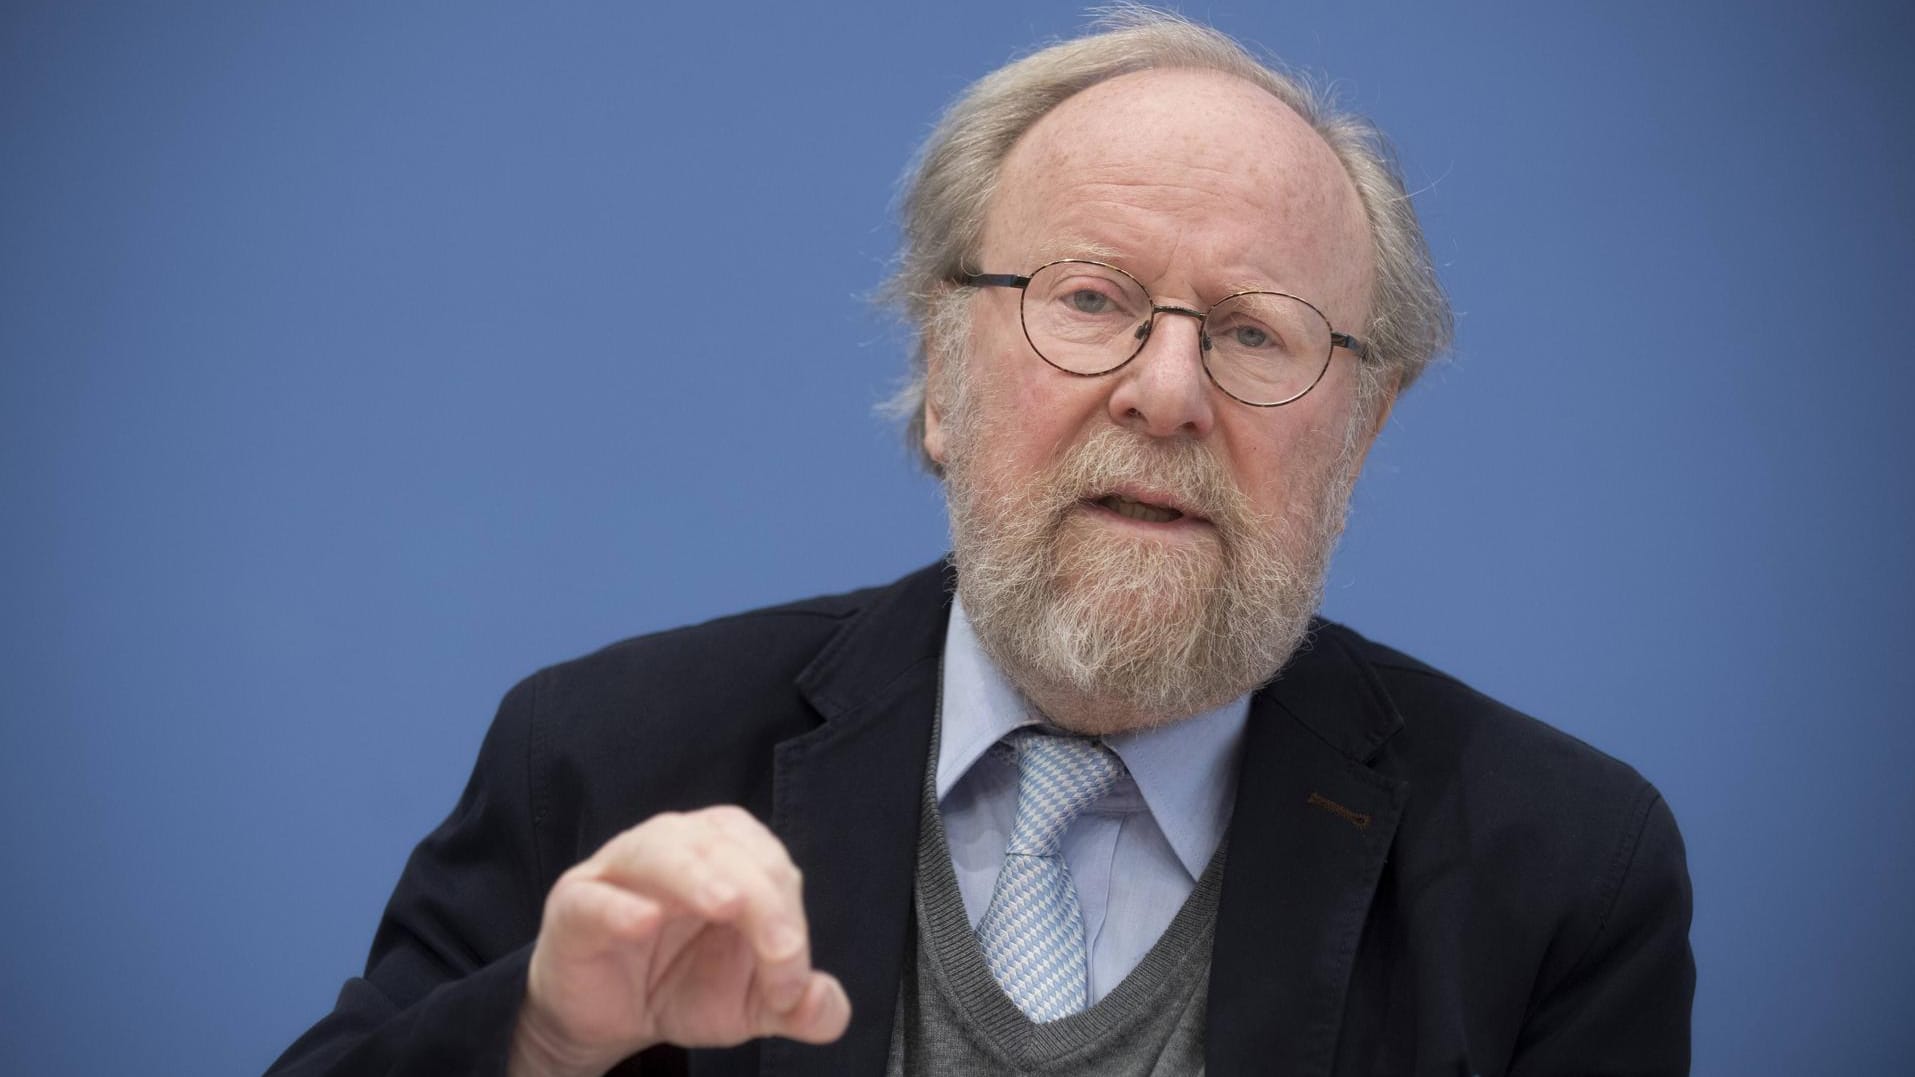 Angriffe auf Politiker: Wolfgang Thierse sieht eine Gefahr